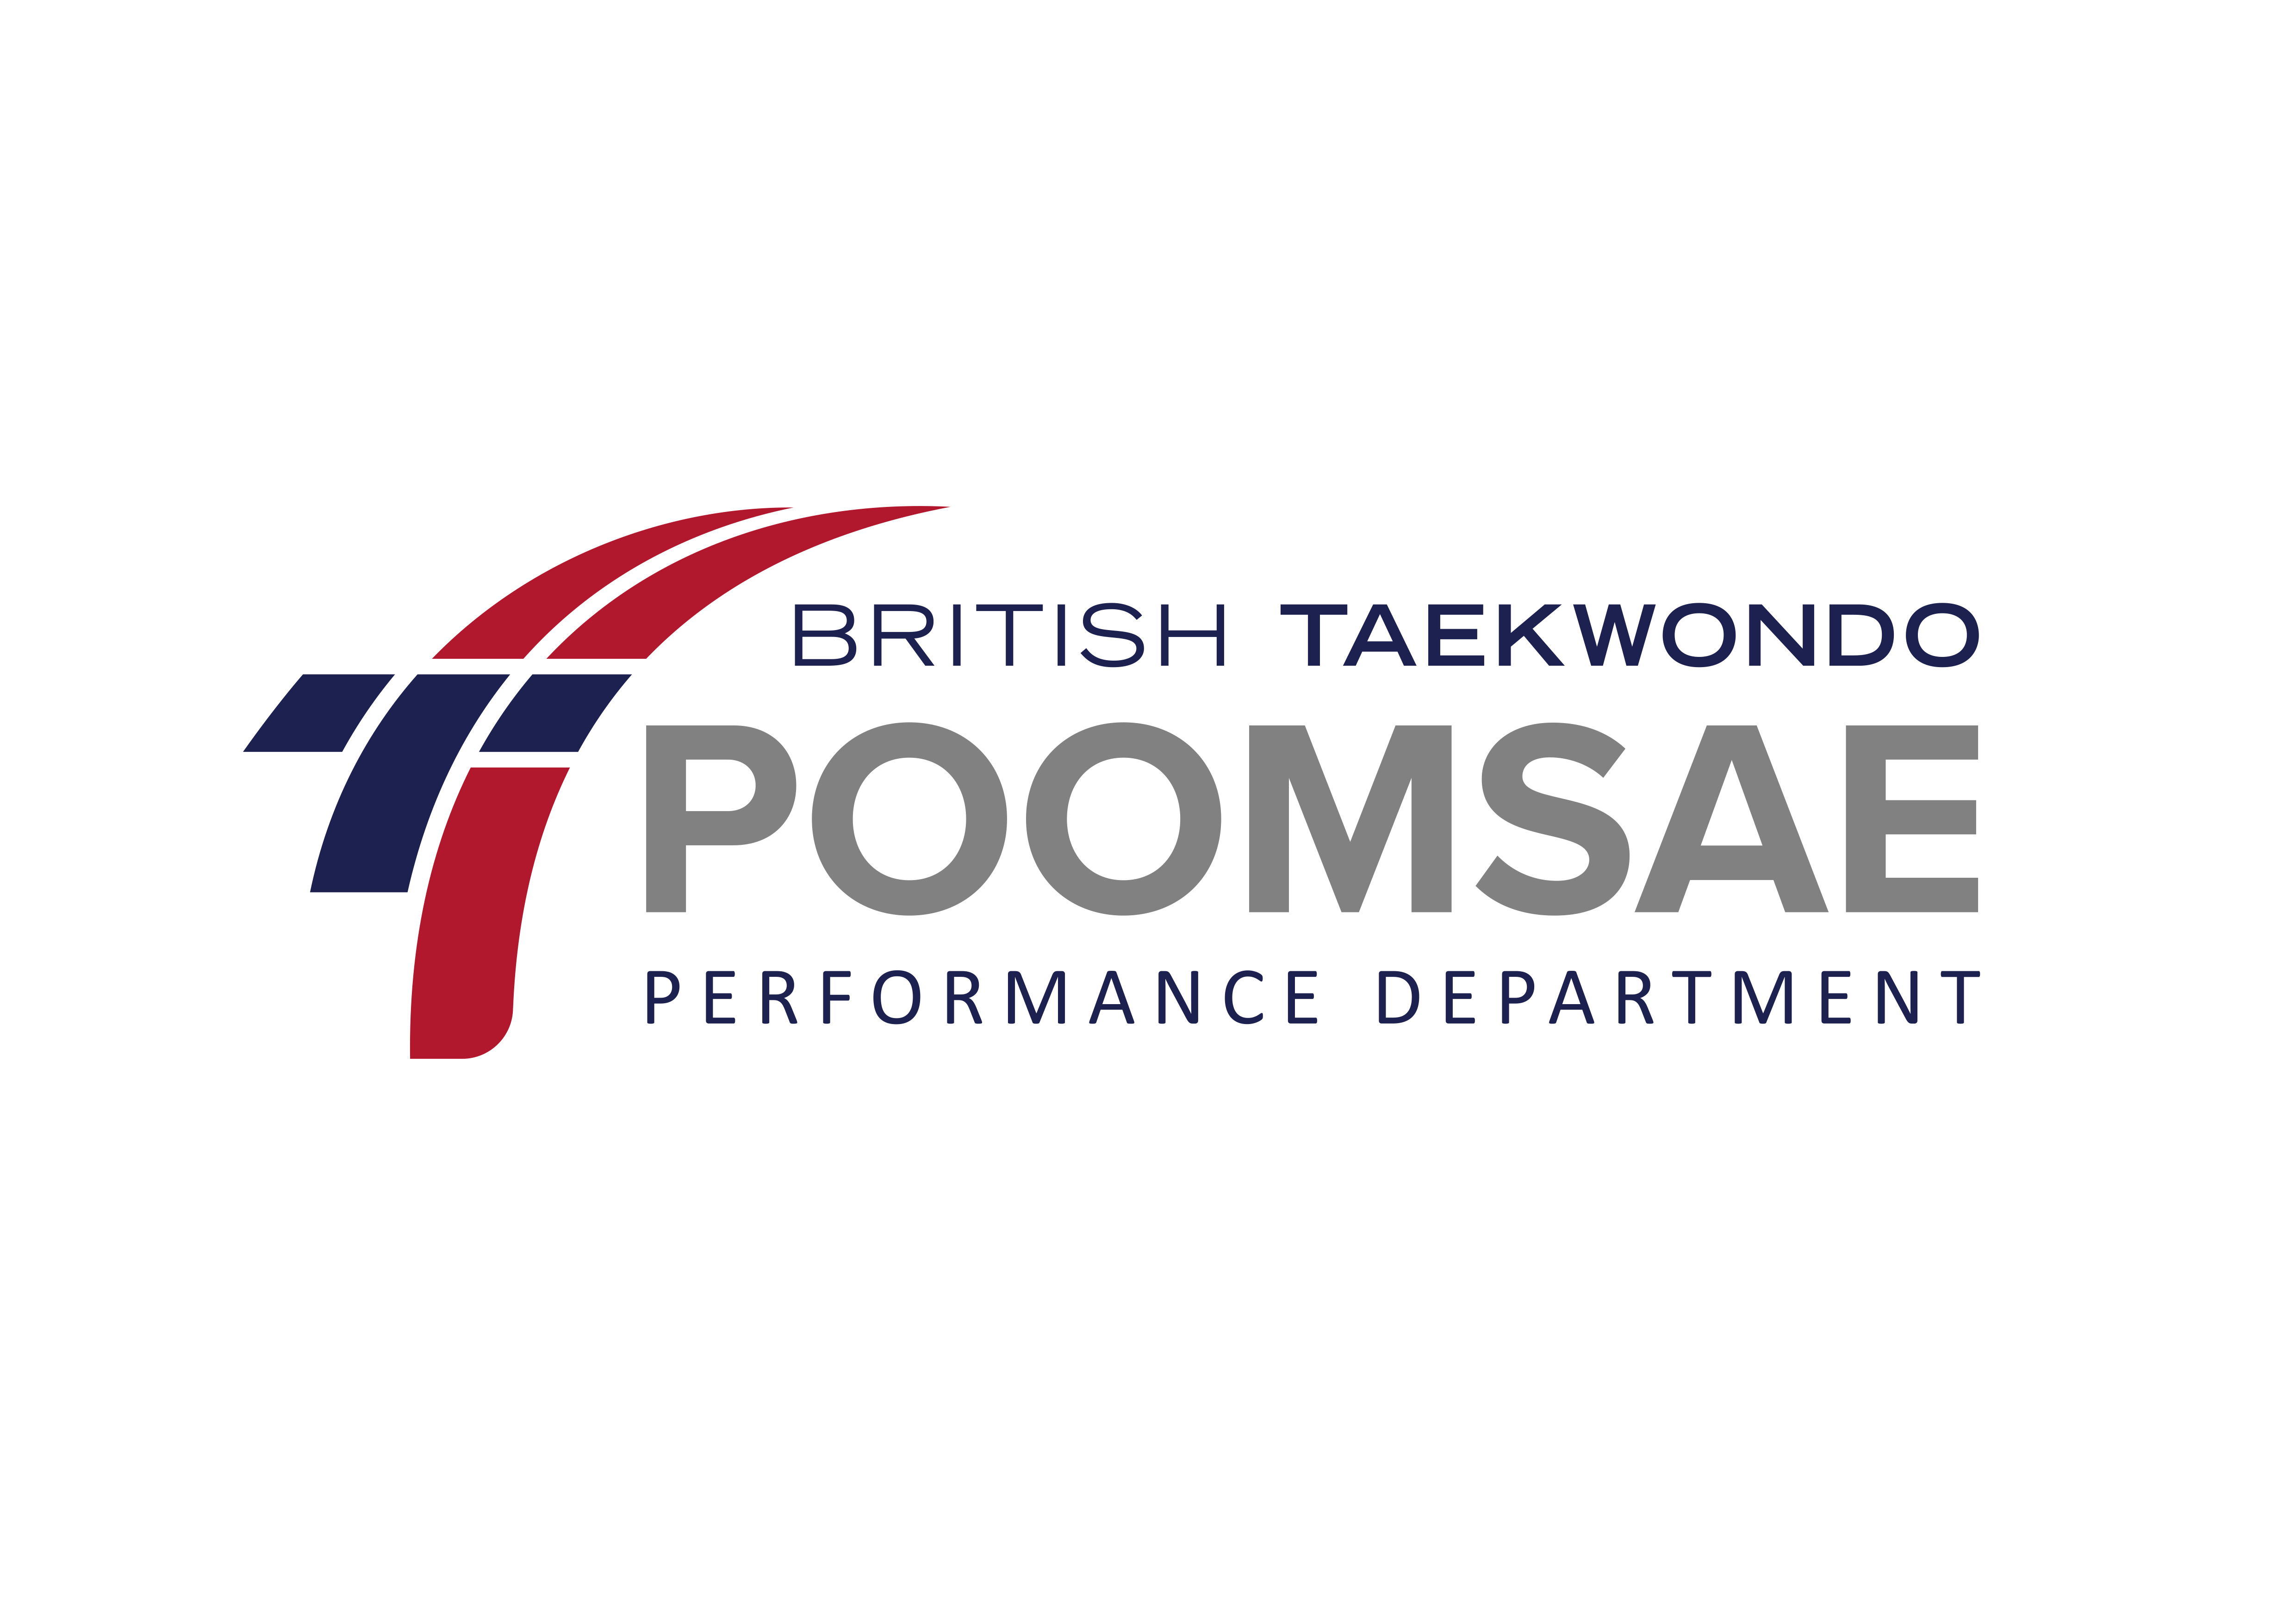 British Taekwondo Poomsae Performance Department logo